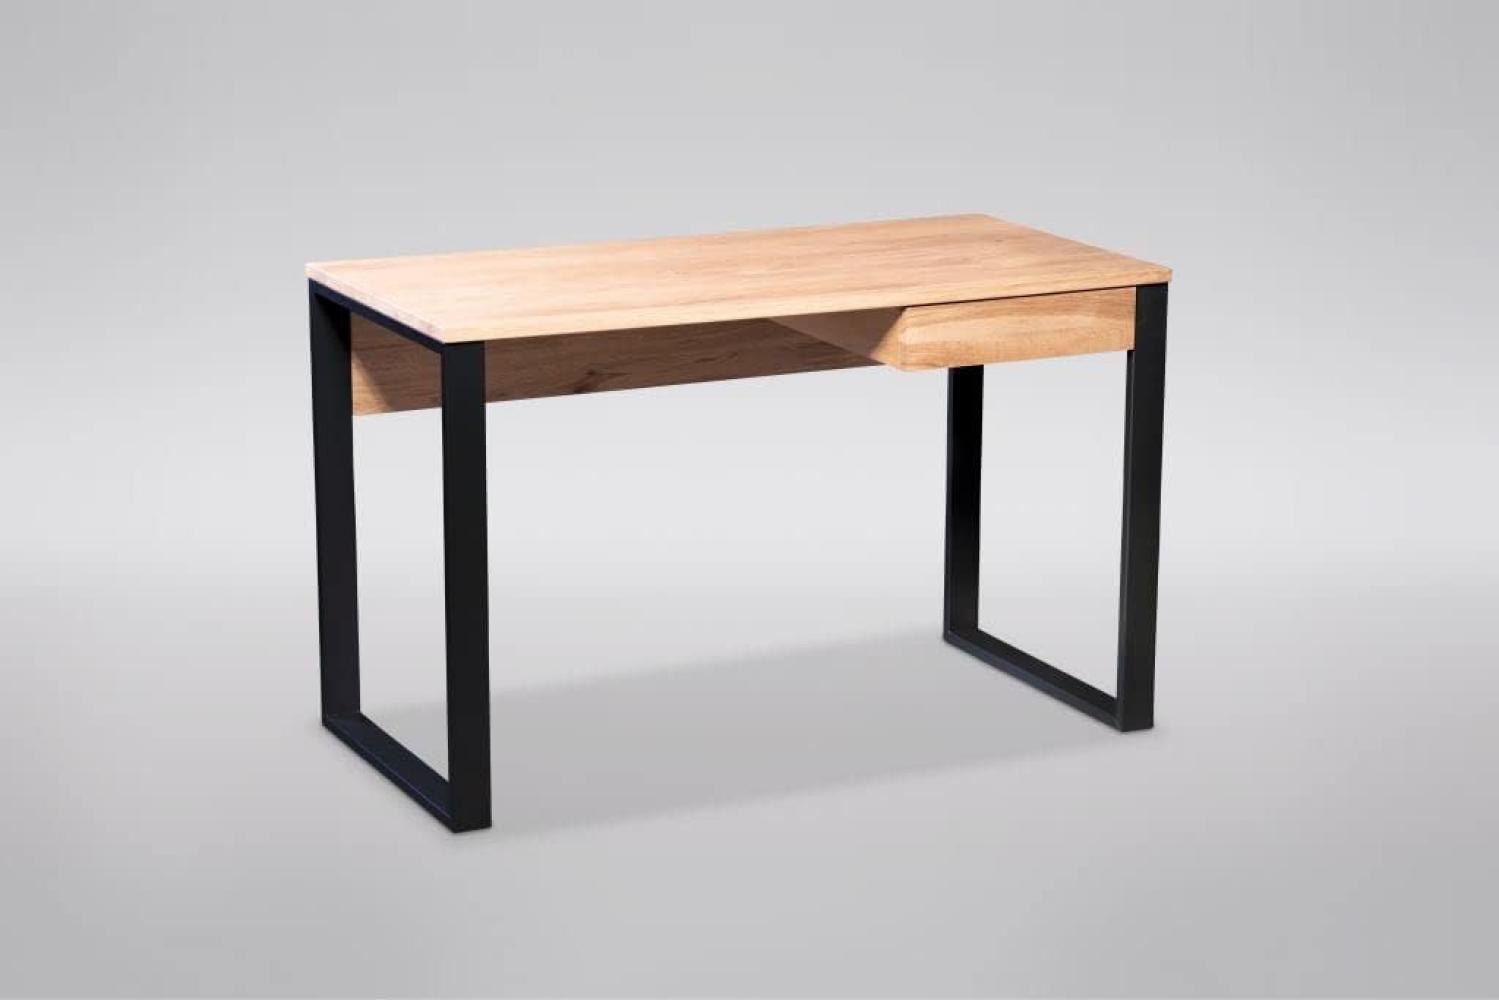 M2 Kollektion Krakau Schreibtisch, Holz, braun, schwarz, B/H/T = 120x75x60cm Bild 1